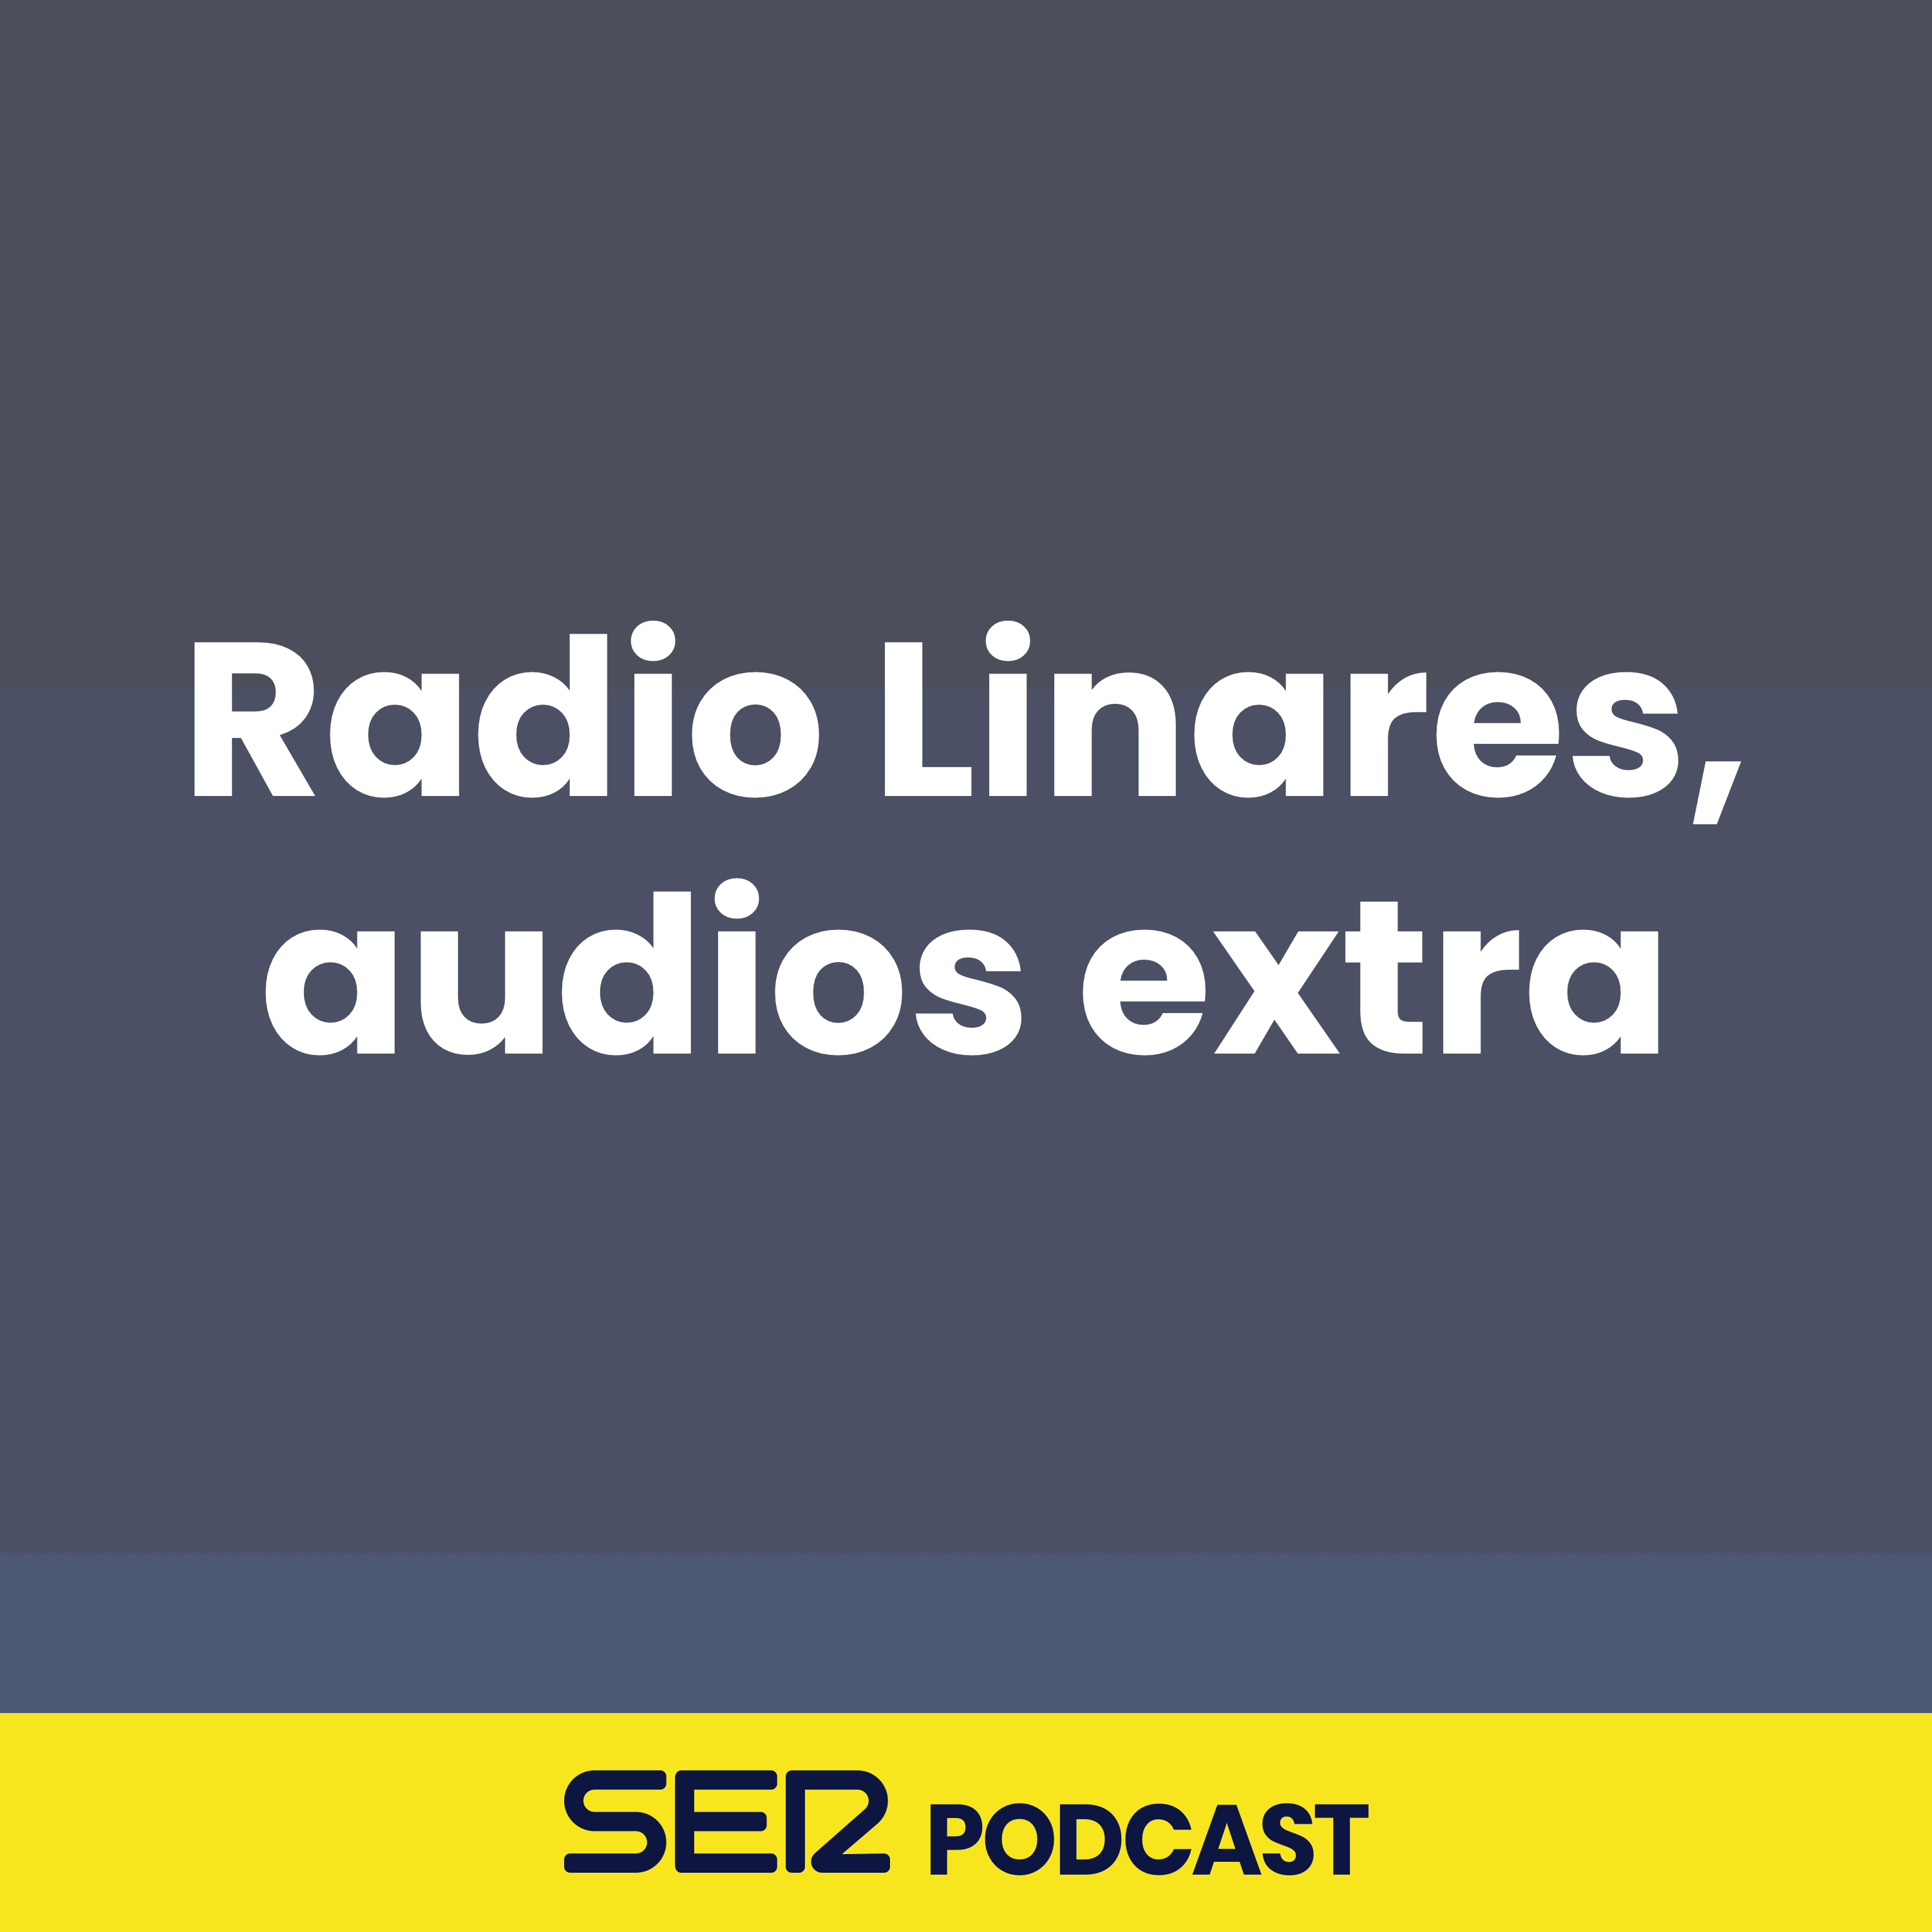 Radio Linares, audios extra